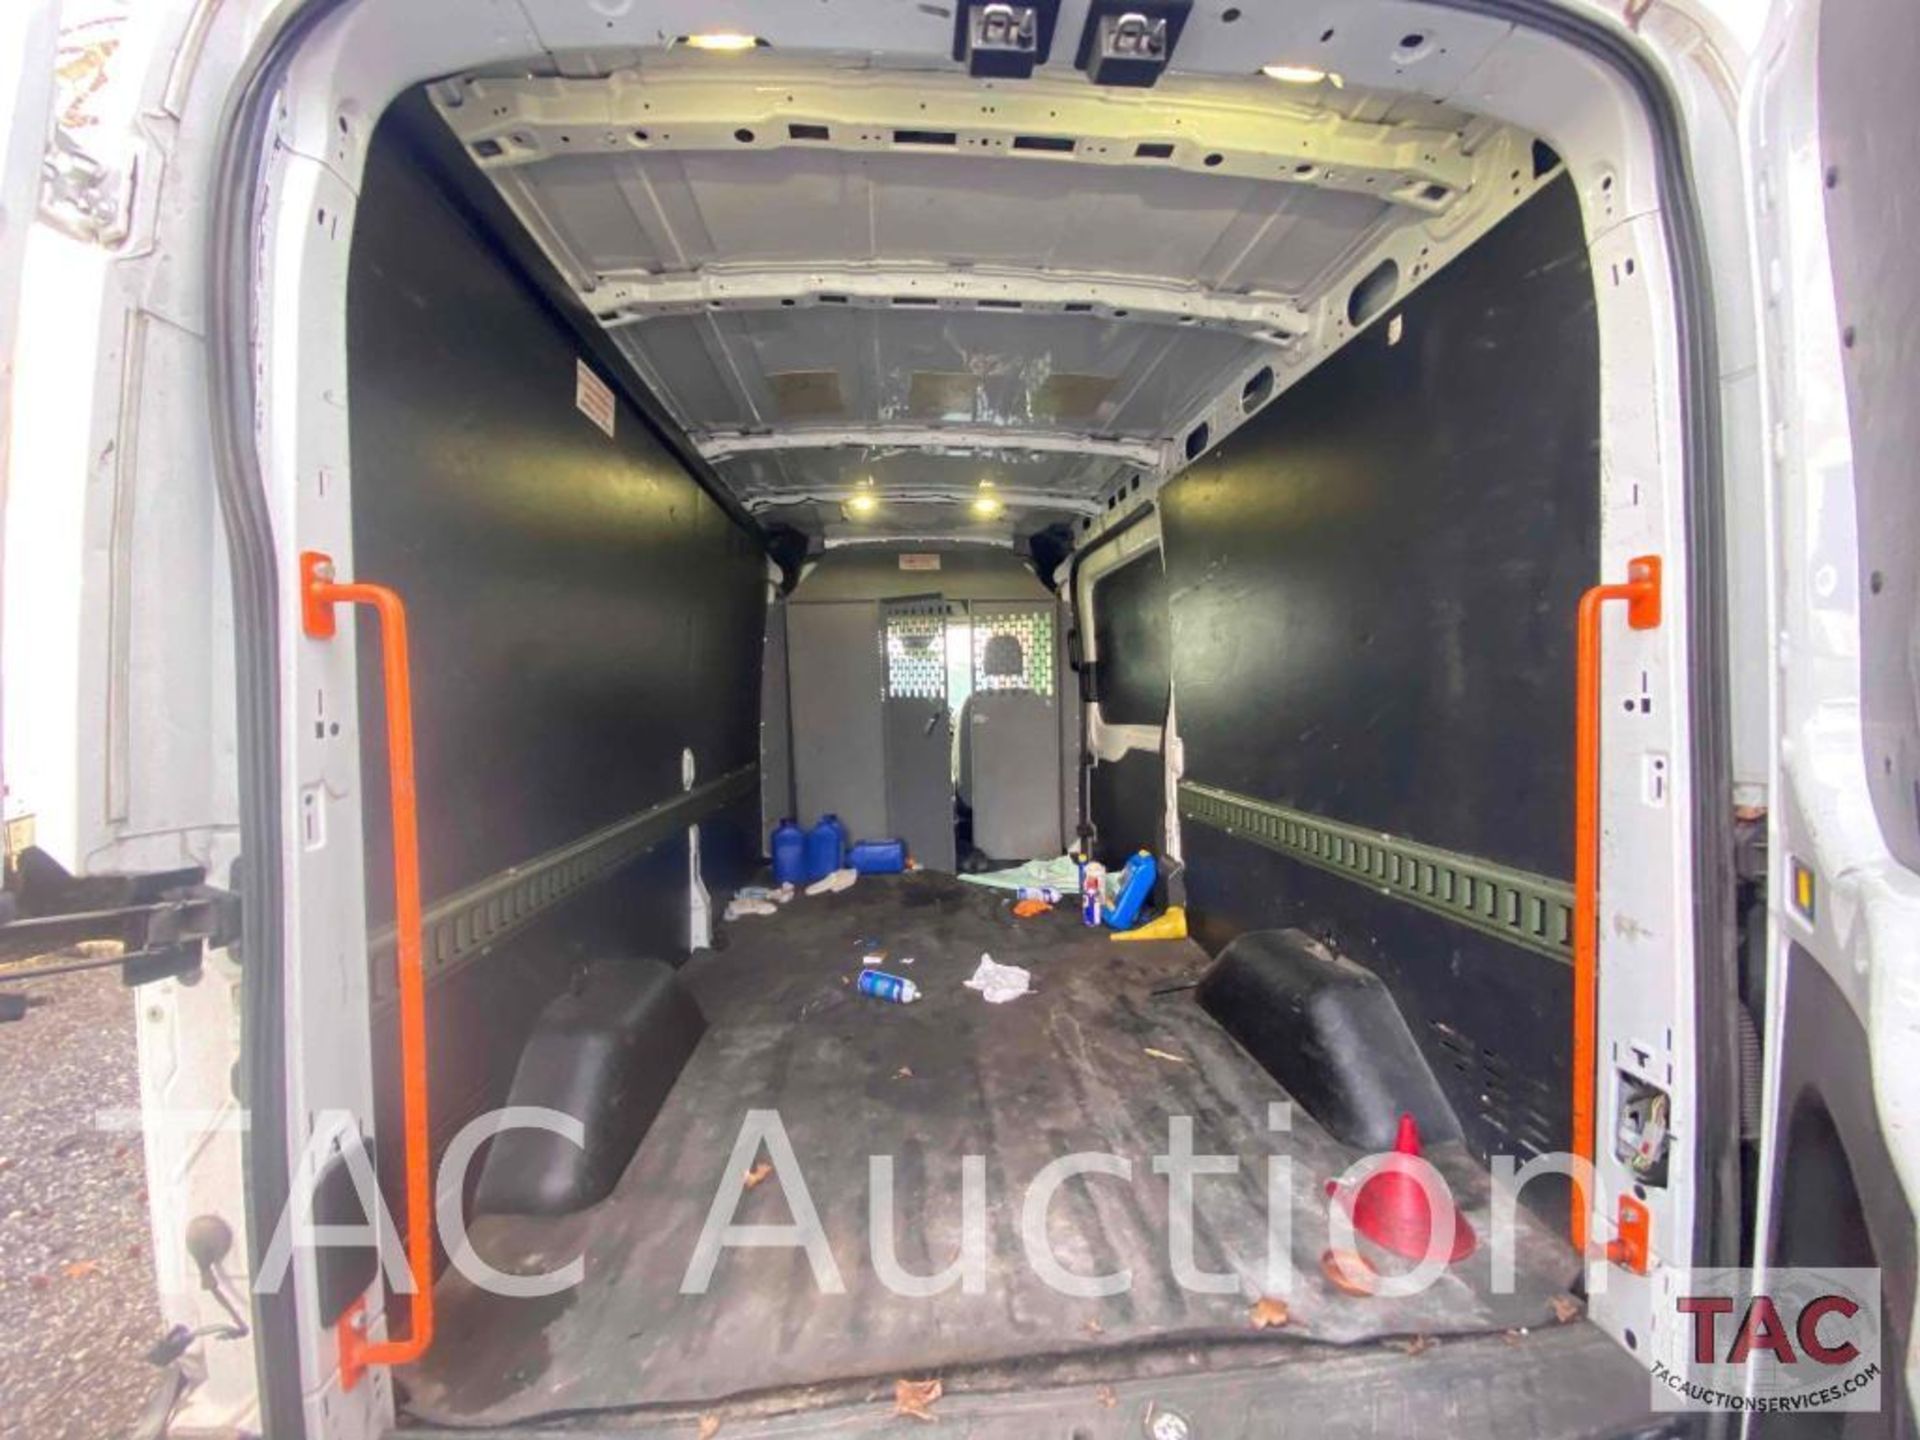 2017 Ford Transit 150 Cargo Van - Image 22 of 42